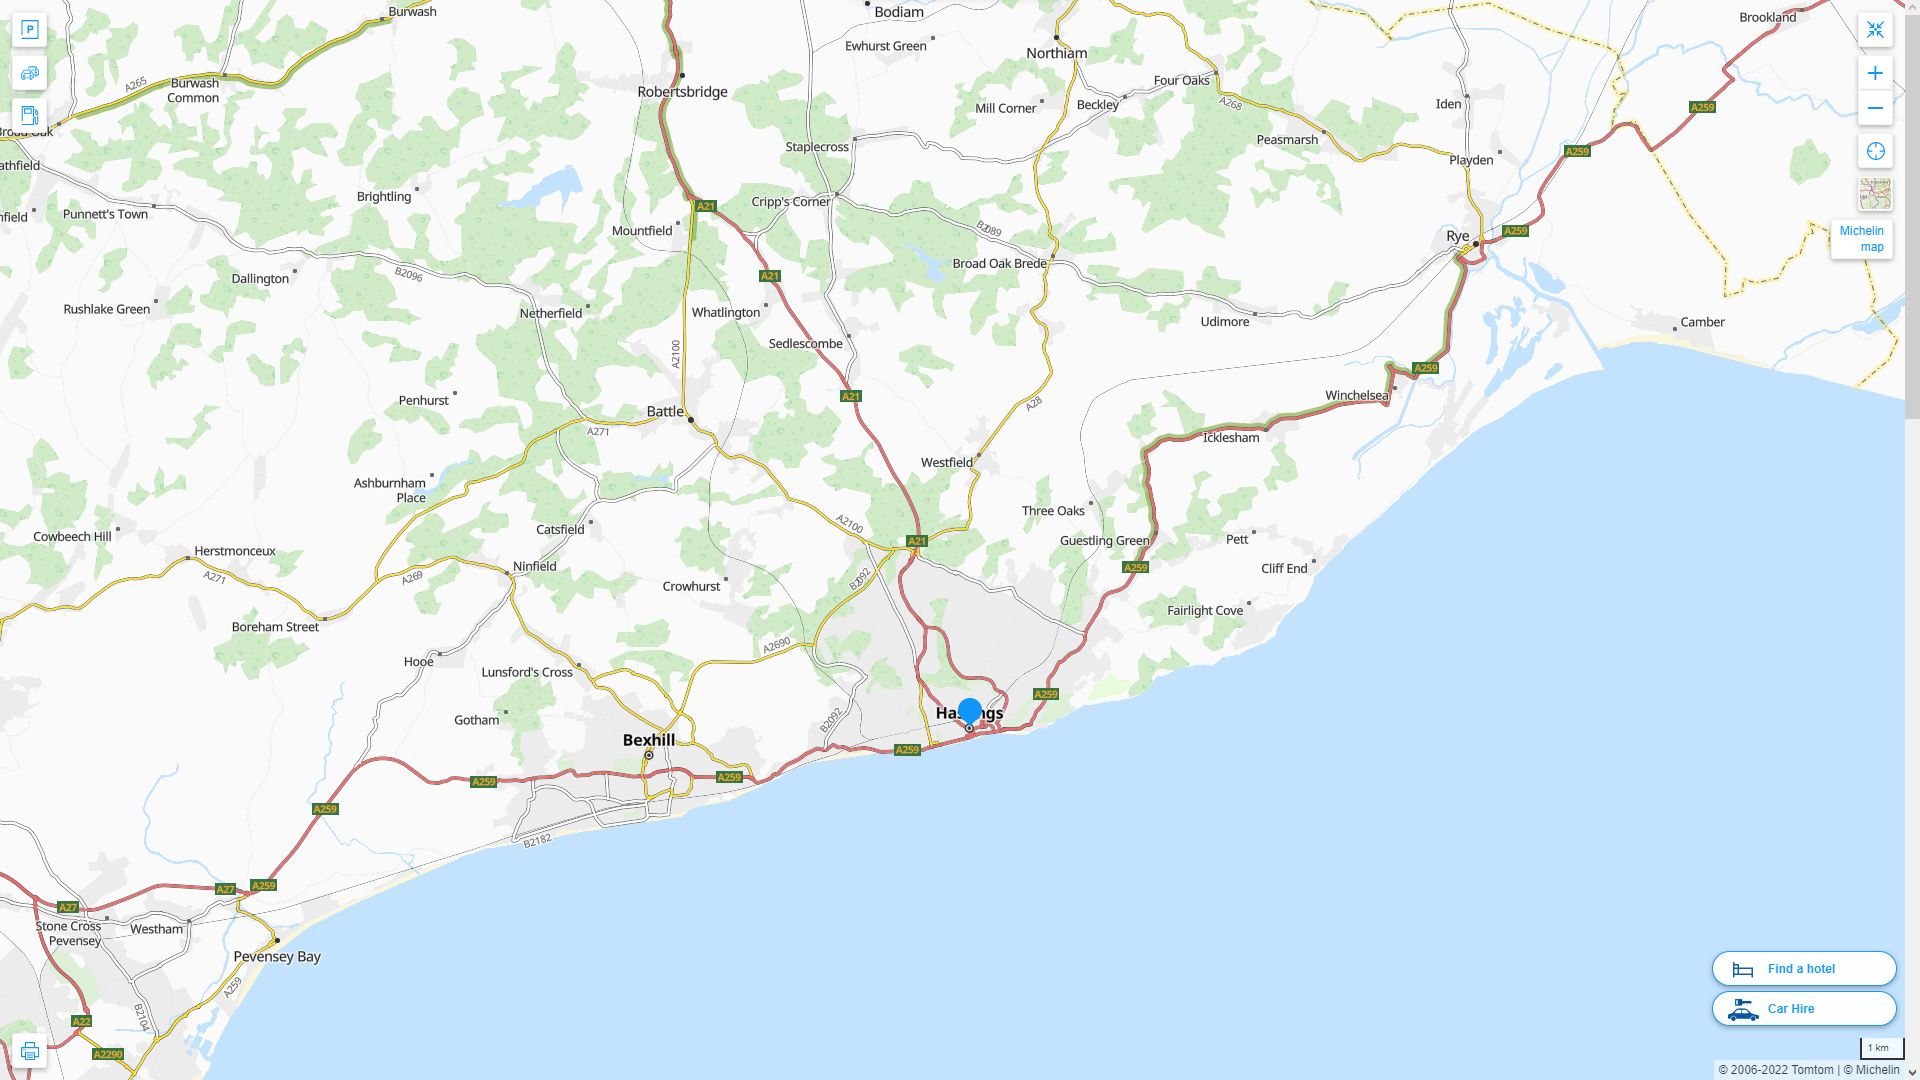 Hastings Royaume Uni Autoroute et carte routiere